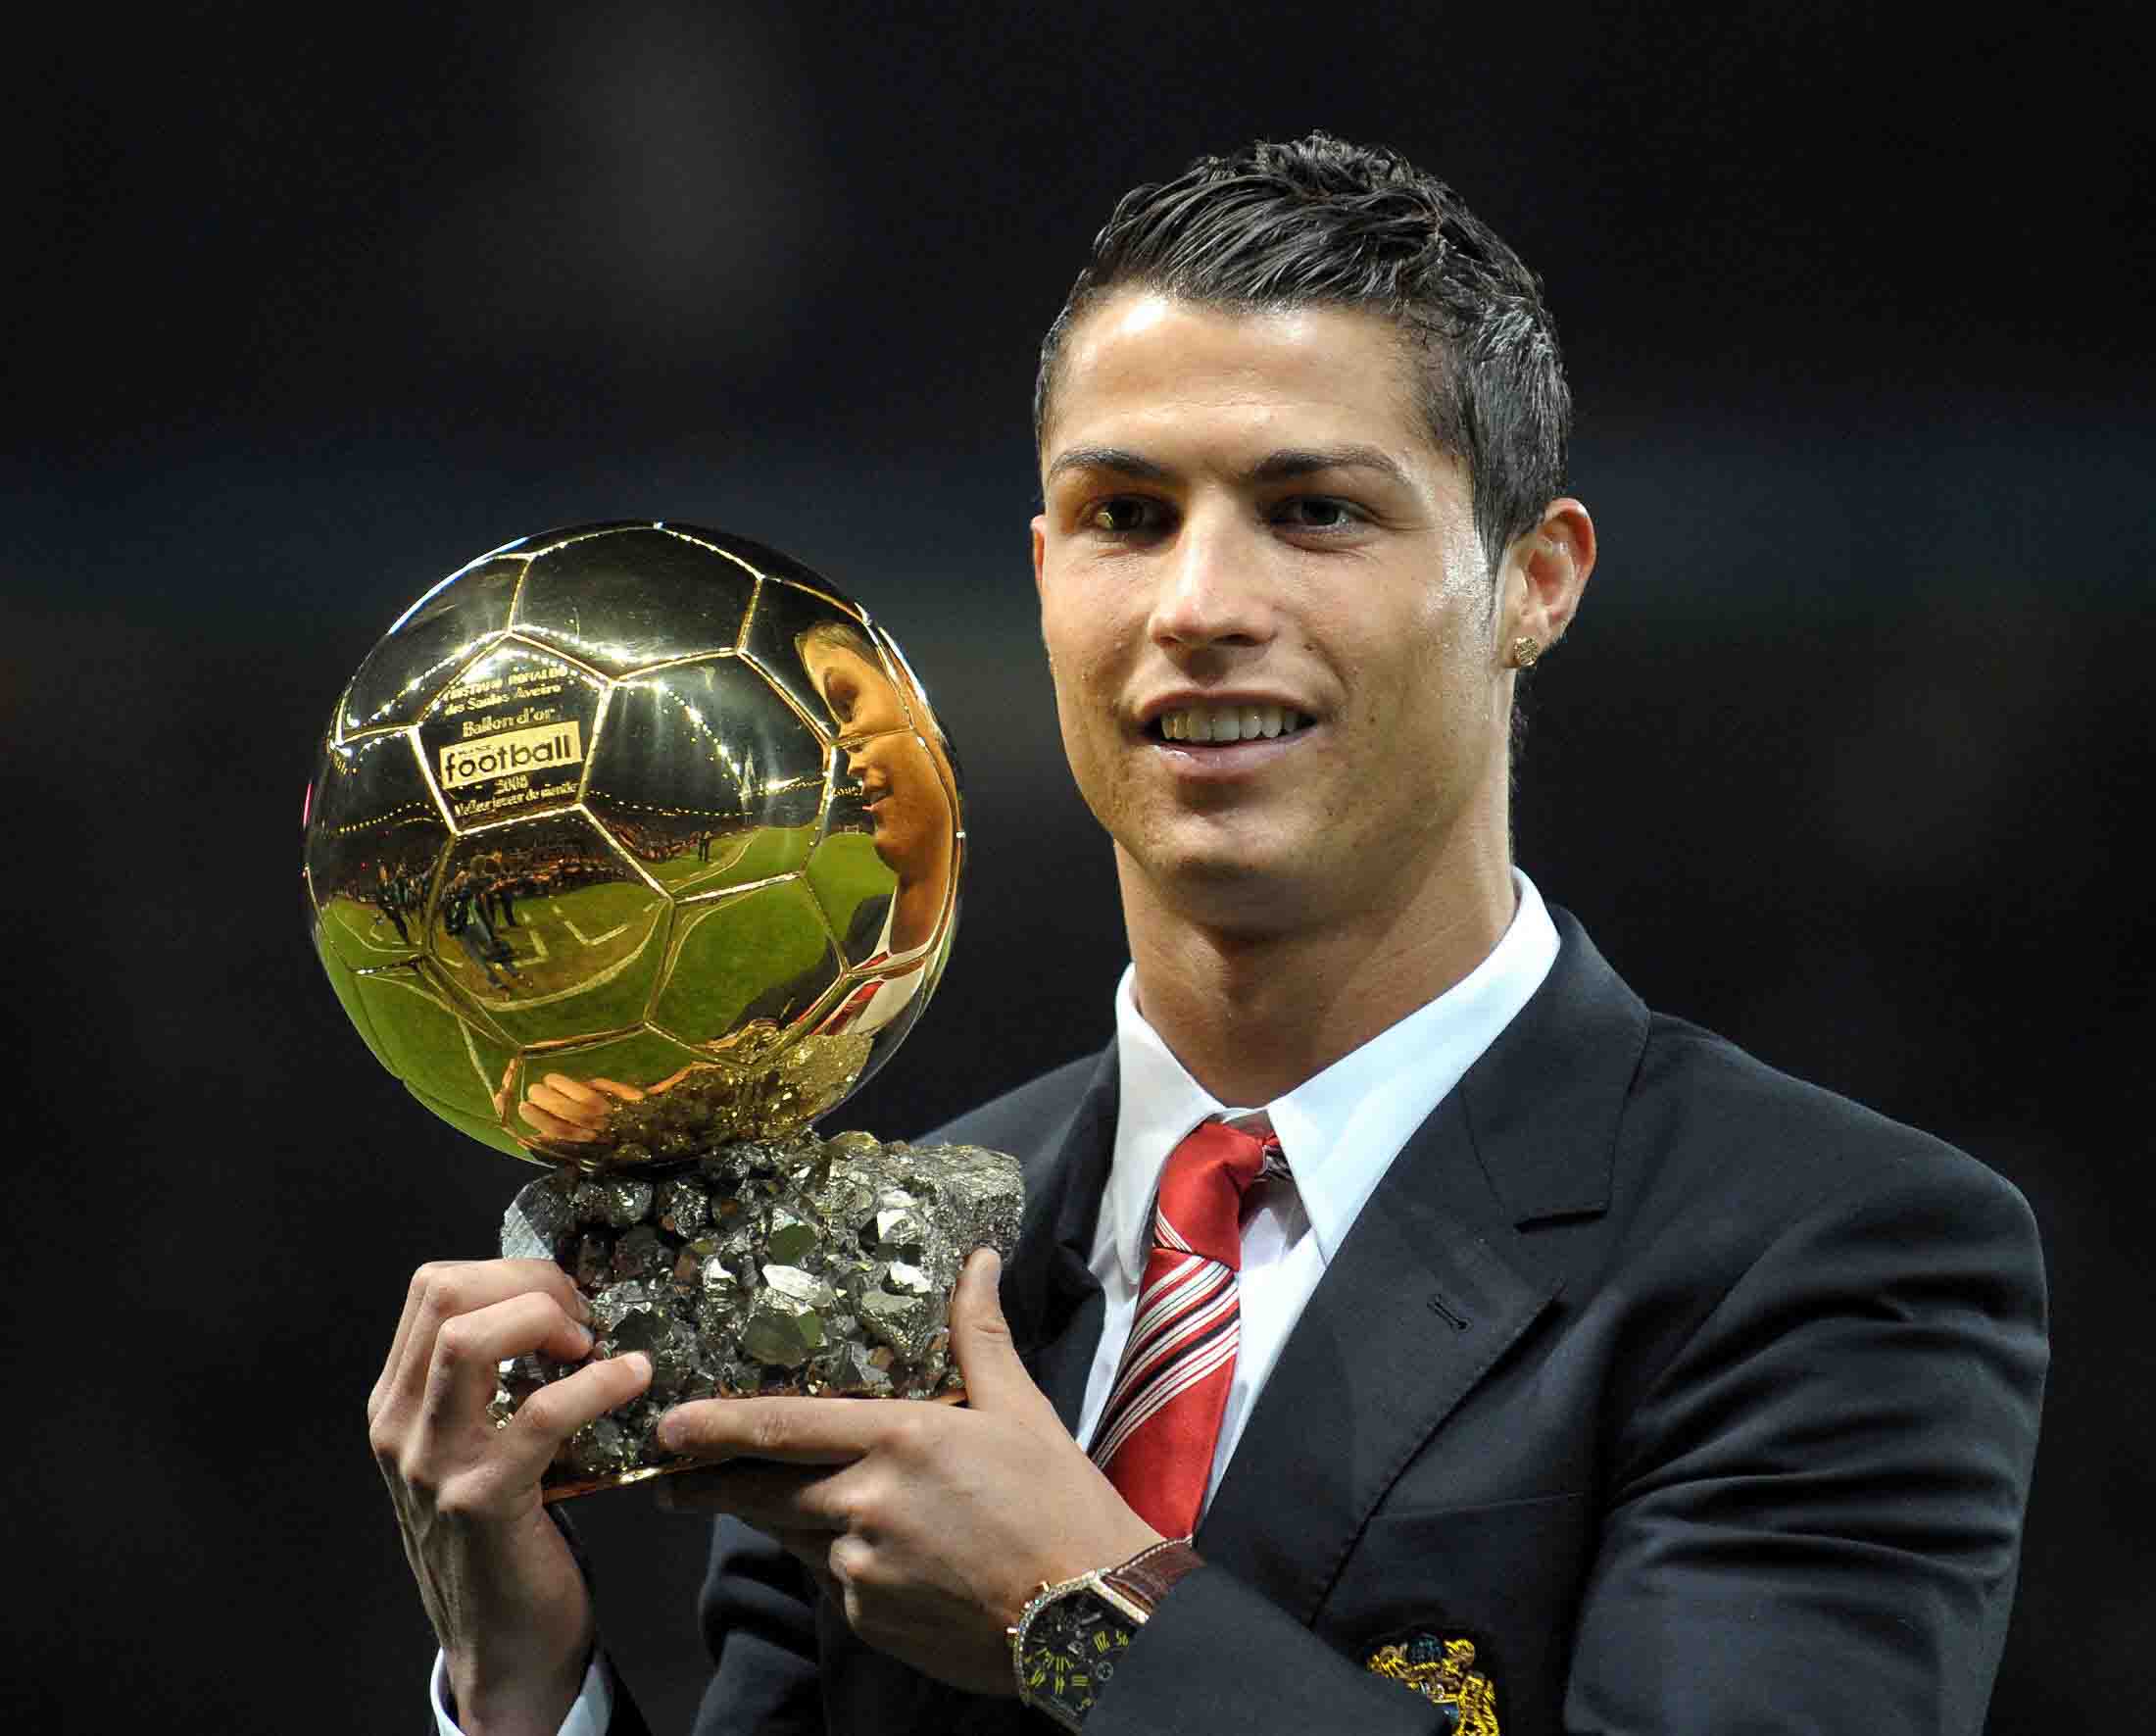 Cristiano Ronaldo giành Quả bóng vàng đầu tiên trong sự nghiệp khi mới 23 tuổi, 9 tháng, 28 ngày và là cầu thủ duy nhất có mặt trong tất cả các lá phiếu bầu năm 2008. Ảnh: UEFA Champions League. 